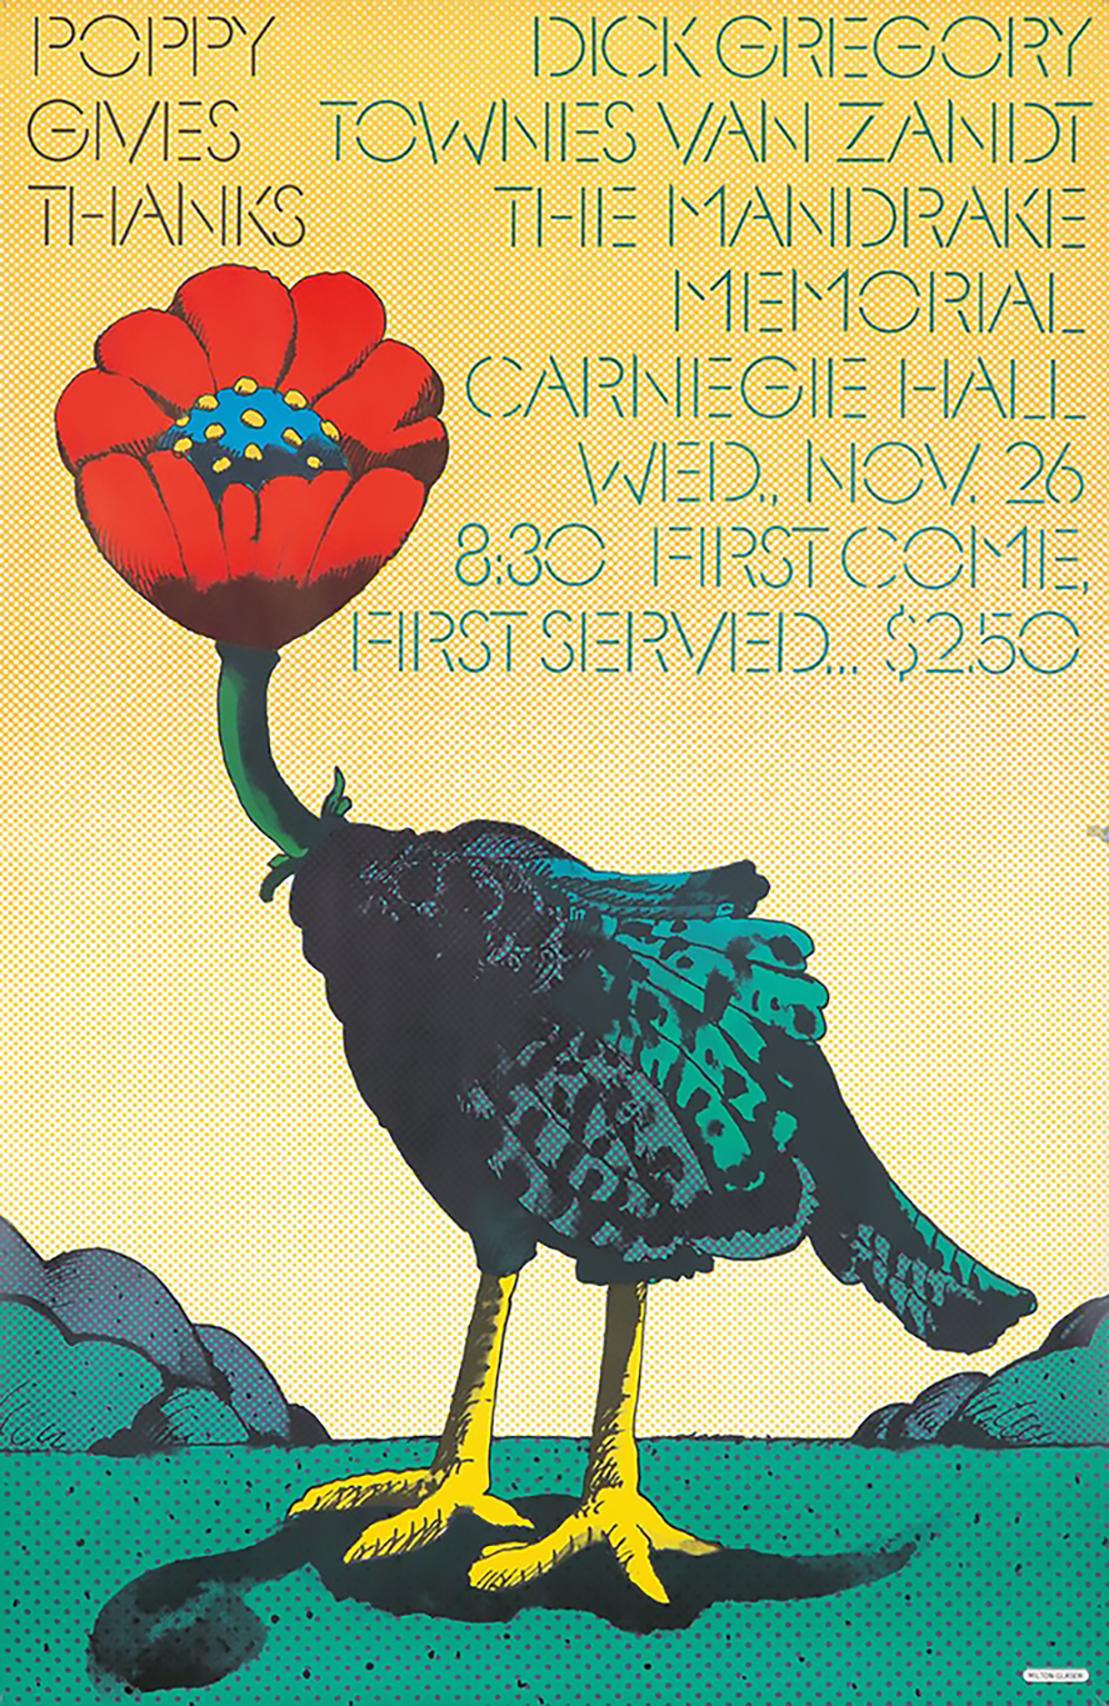 1960er Jahre Milton Glaser Poster Kunst: 
Milton Glaser Mohnblume dankt: Vintage Originalplakat von Milton Glaser, ca. 1968. Entworfen von Milton Glaser anlässlich eines Konzerts in der New Yorker Carnegie Hall mit Künstlern der Popmusik (Townes Van